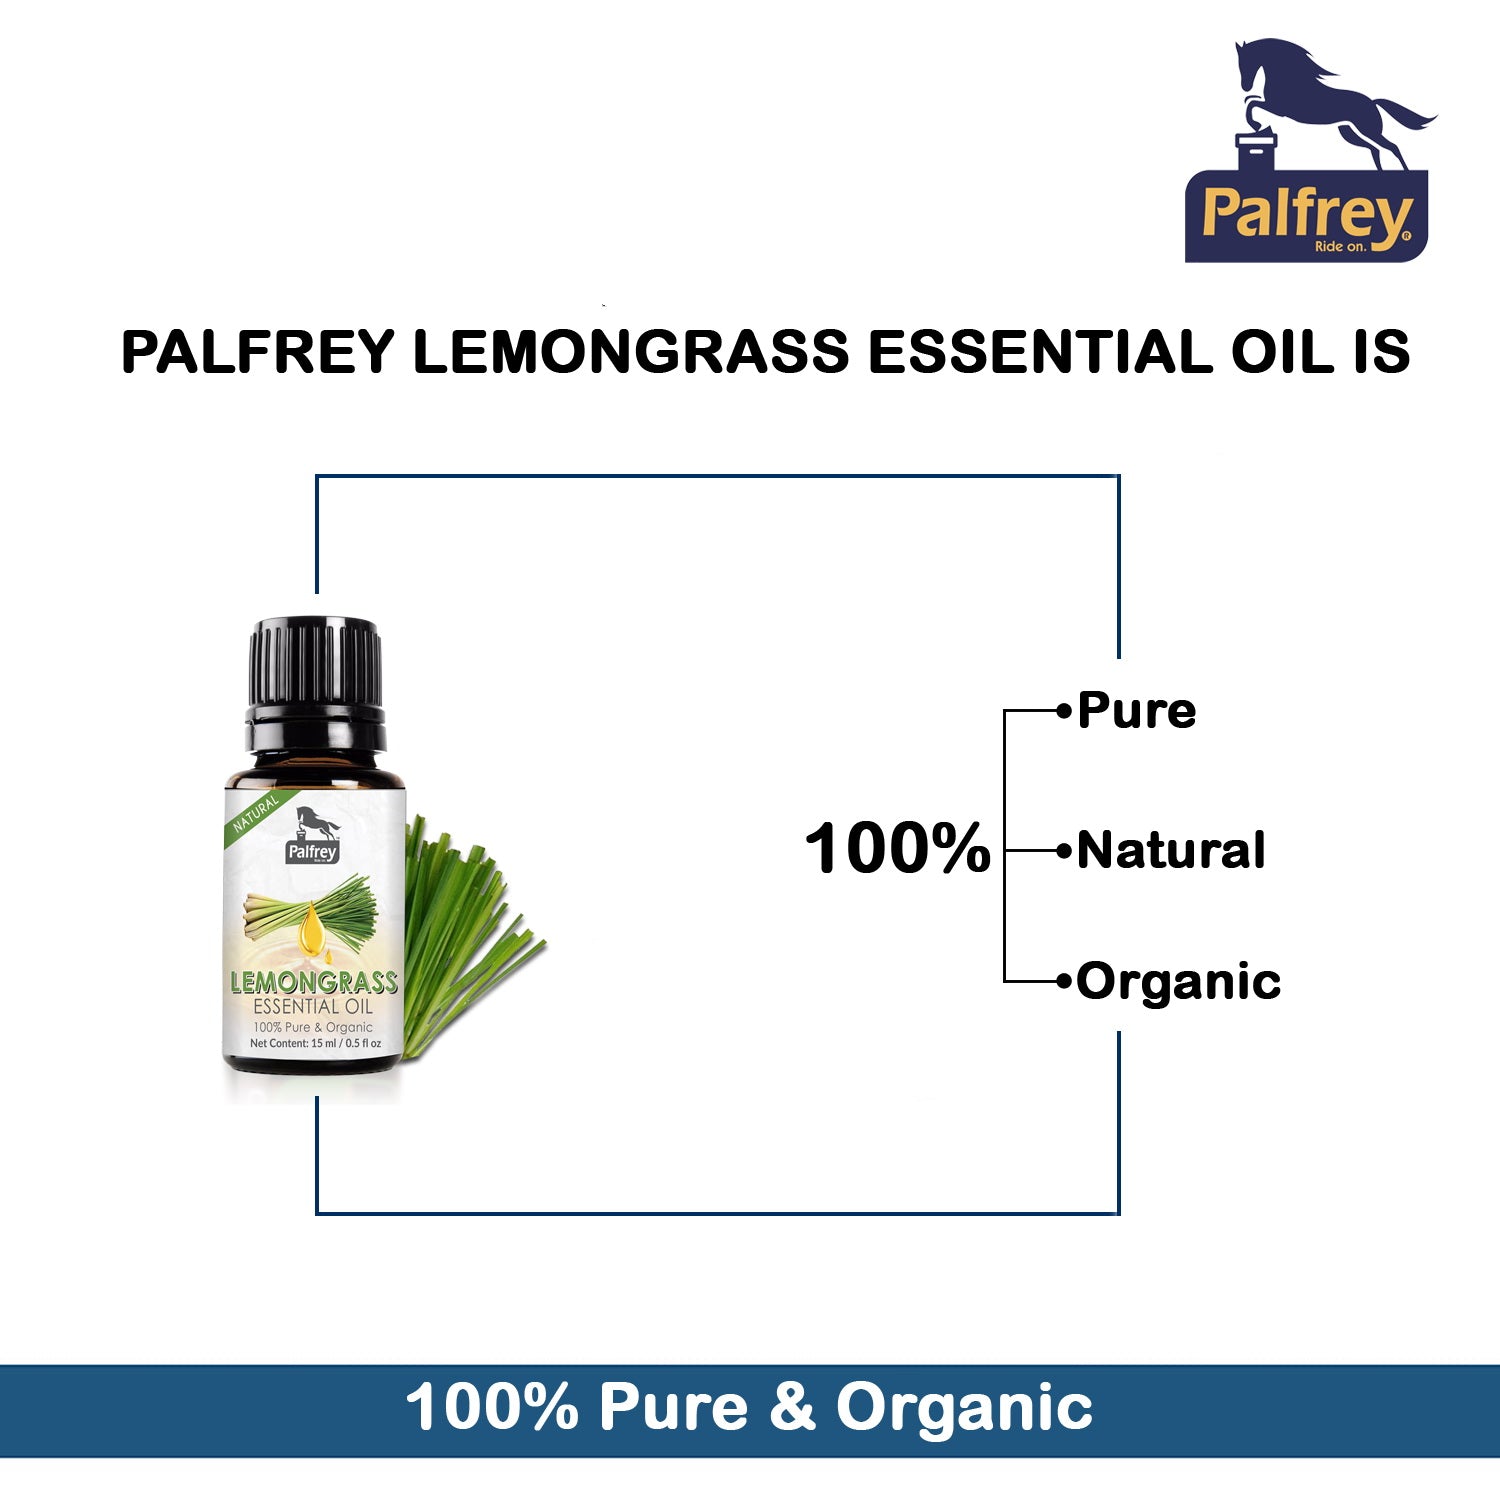 Palfrey LemonGrass Essential Oils 15ml